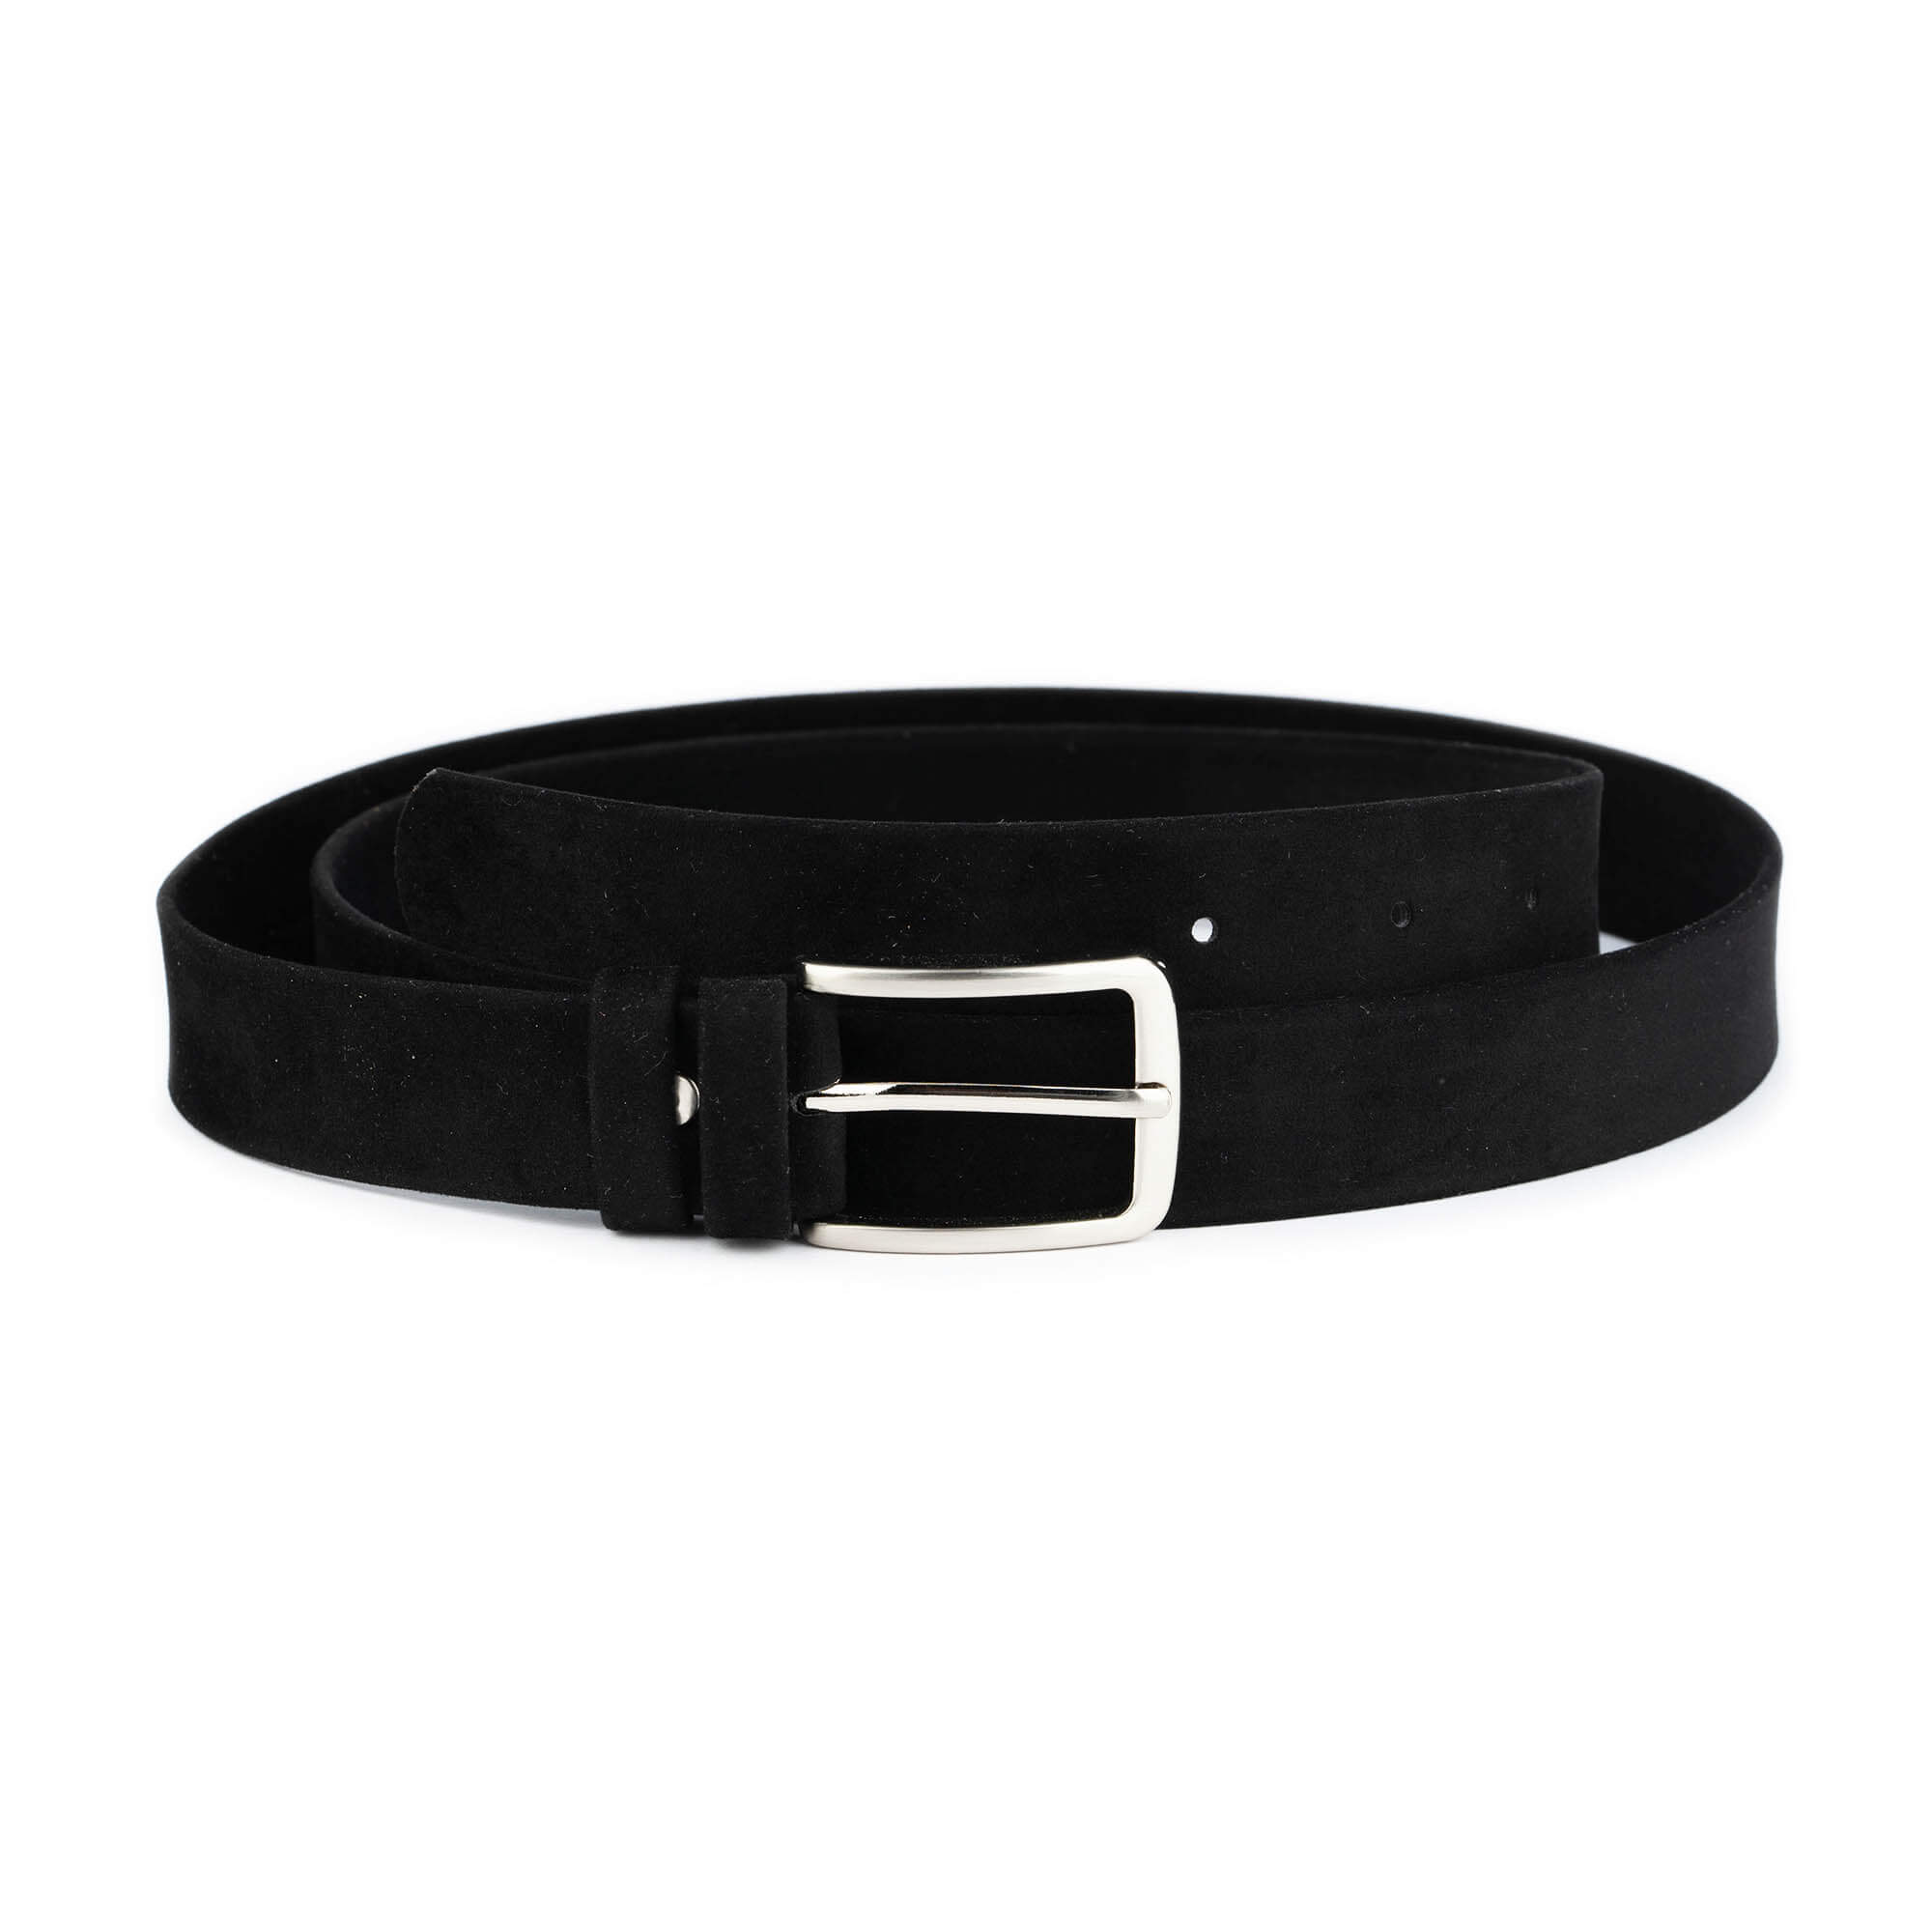 Buy Black Velvet Belt For Women - LeatherBeltsOnline.com